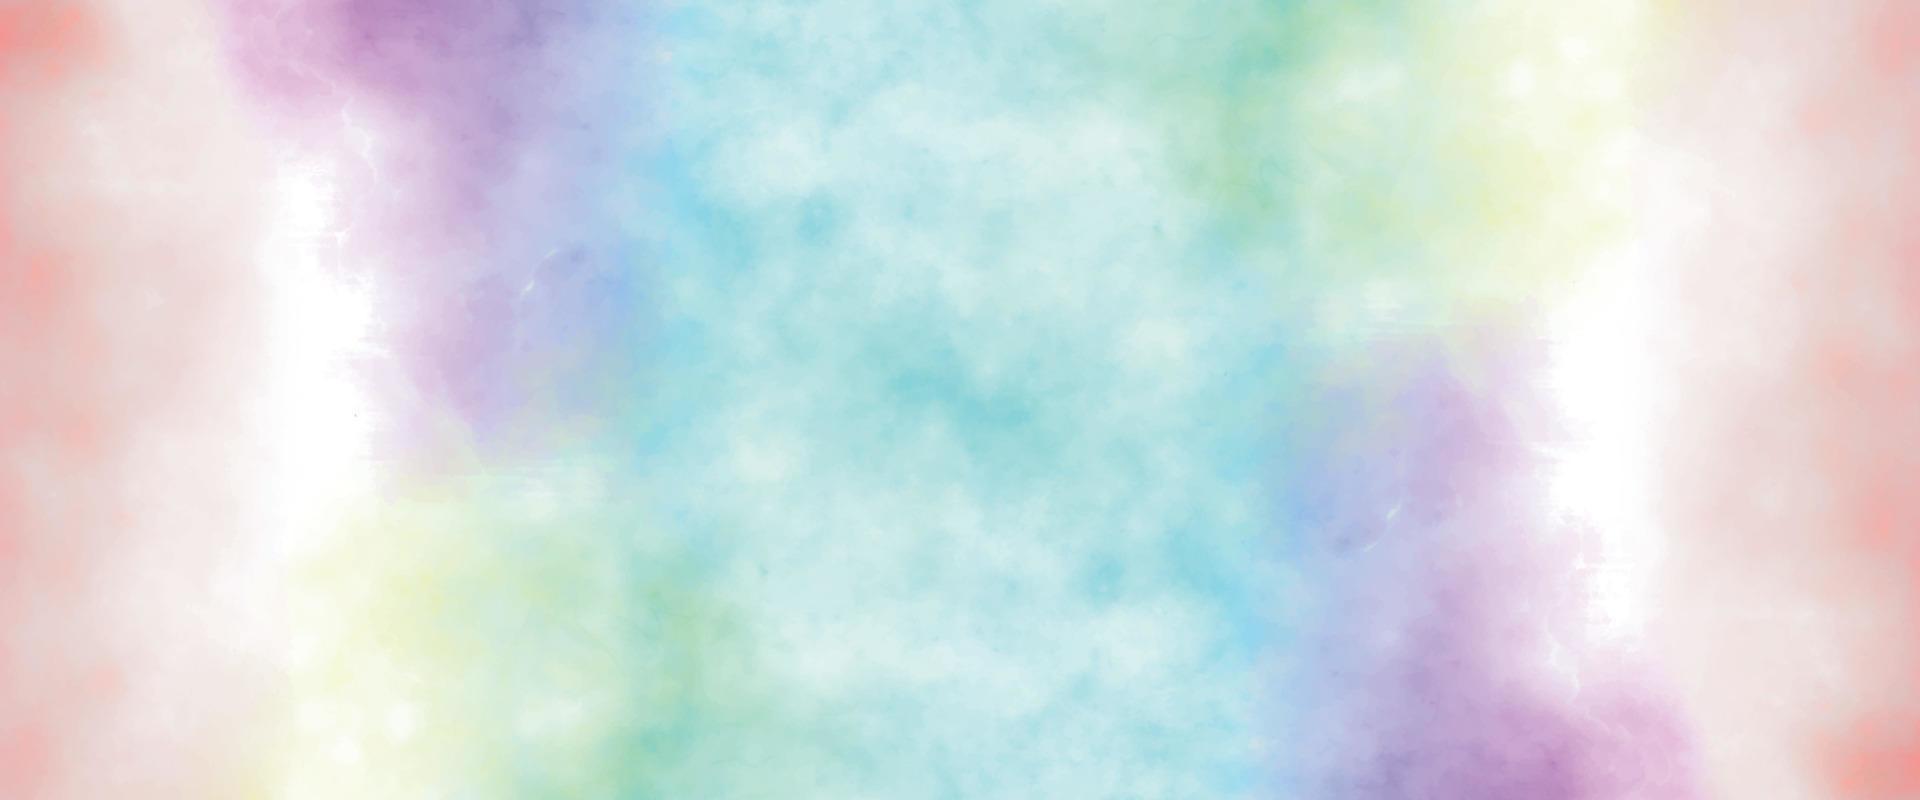 pintura colorida del arte del grunge. efecto de la luz de color caliente de las nubes de la puesta de sol en el fondo del cielo de la puesta de sol. fondo ardiente. diseño abstracto del fondo del grunge de la acuarela. vector